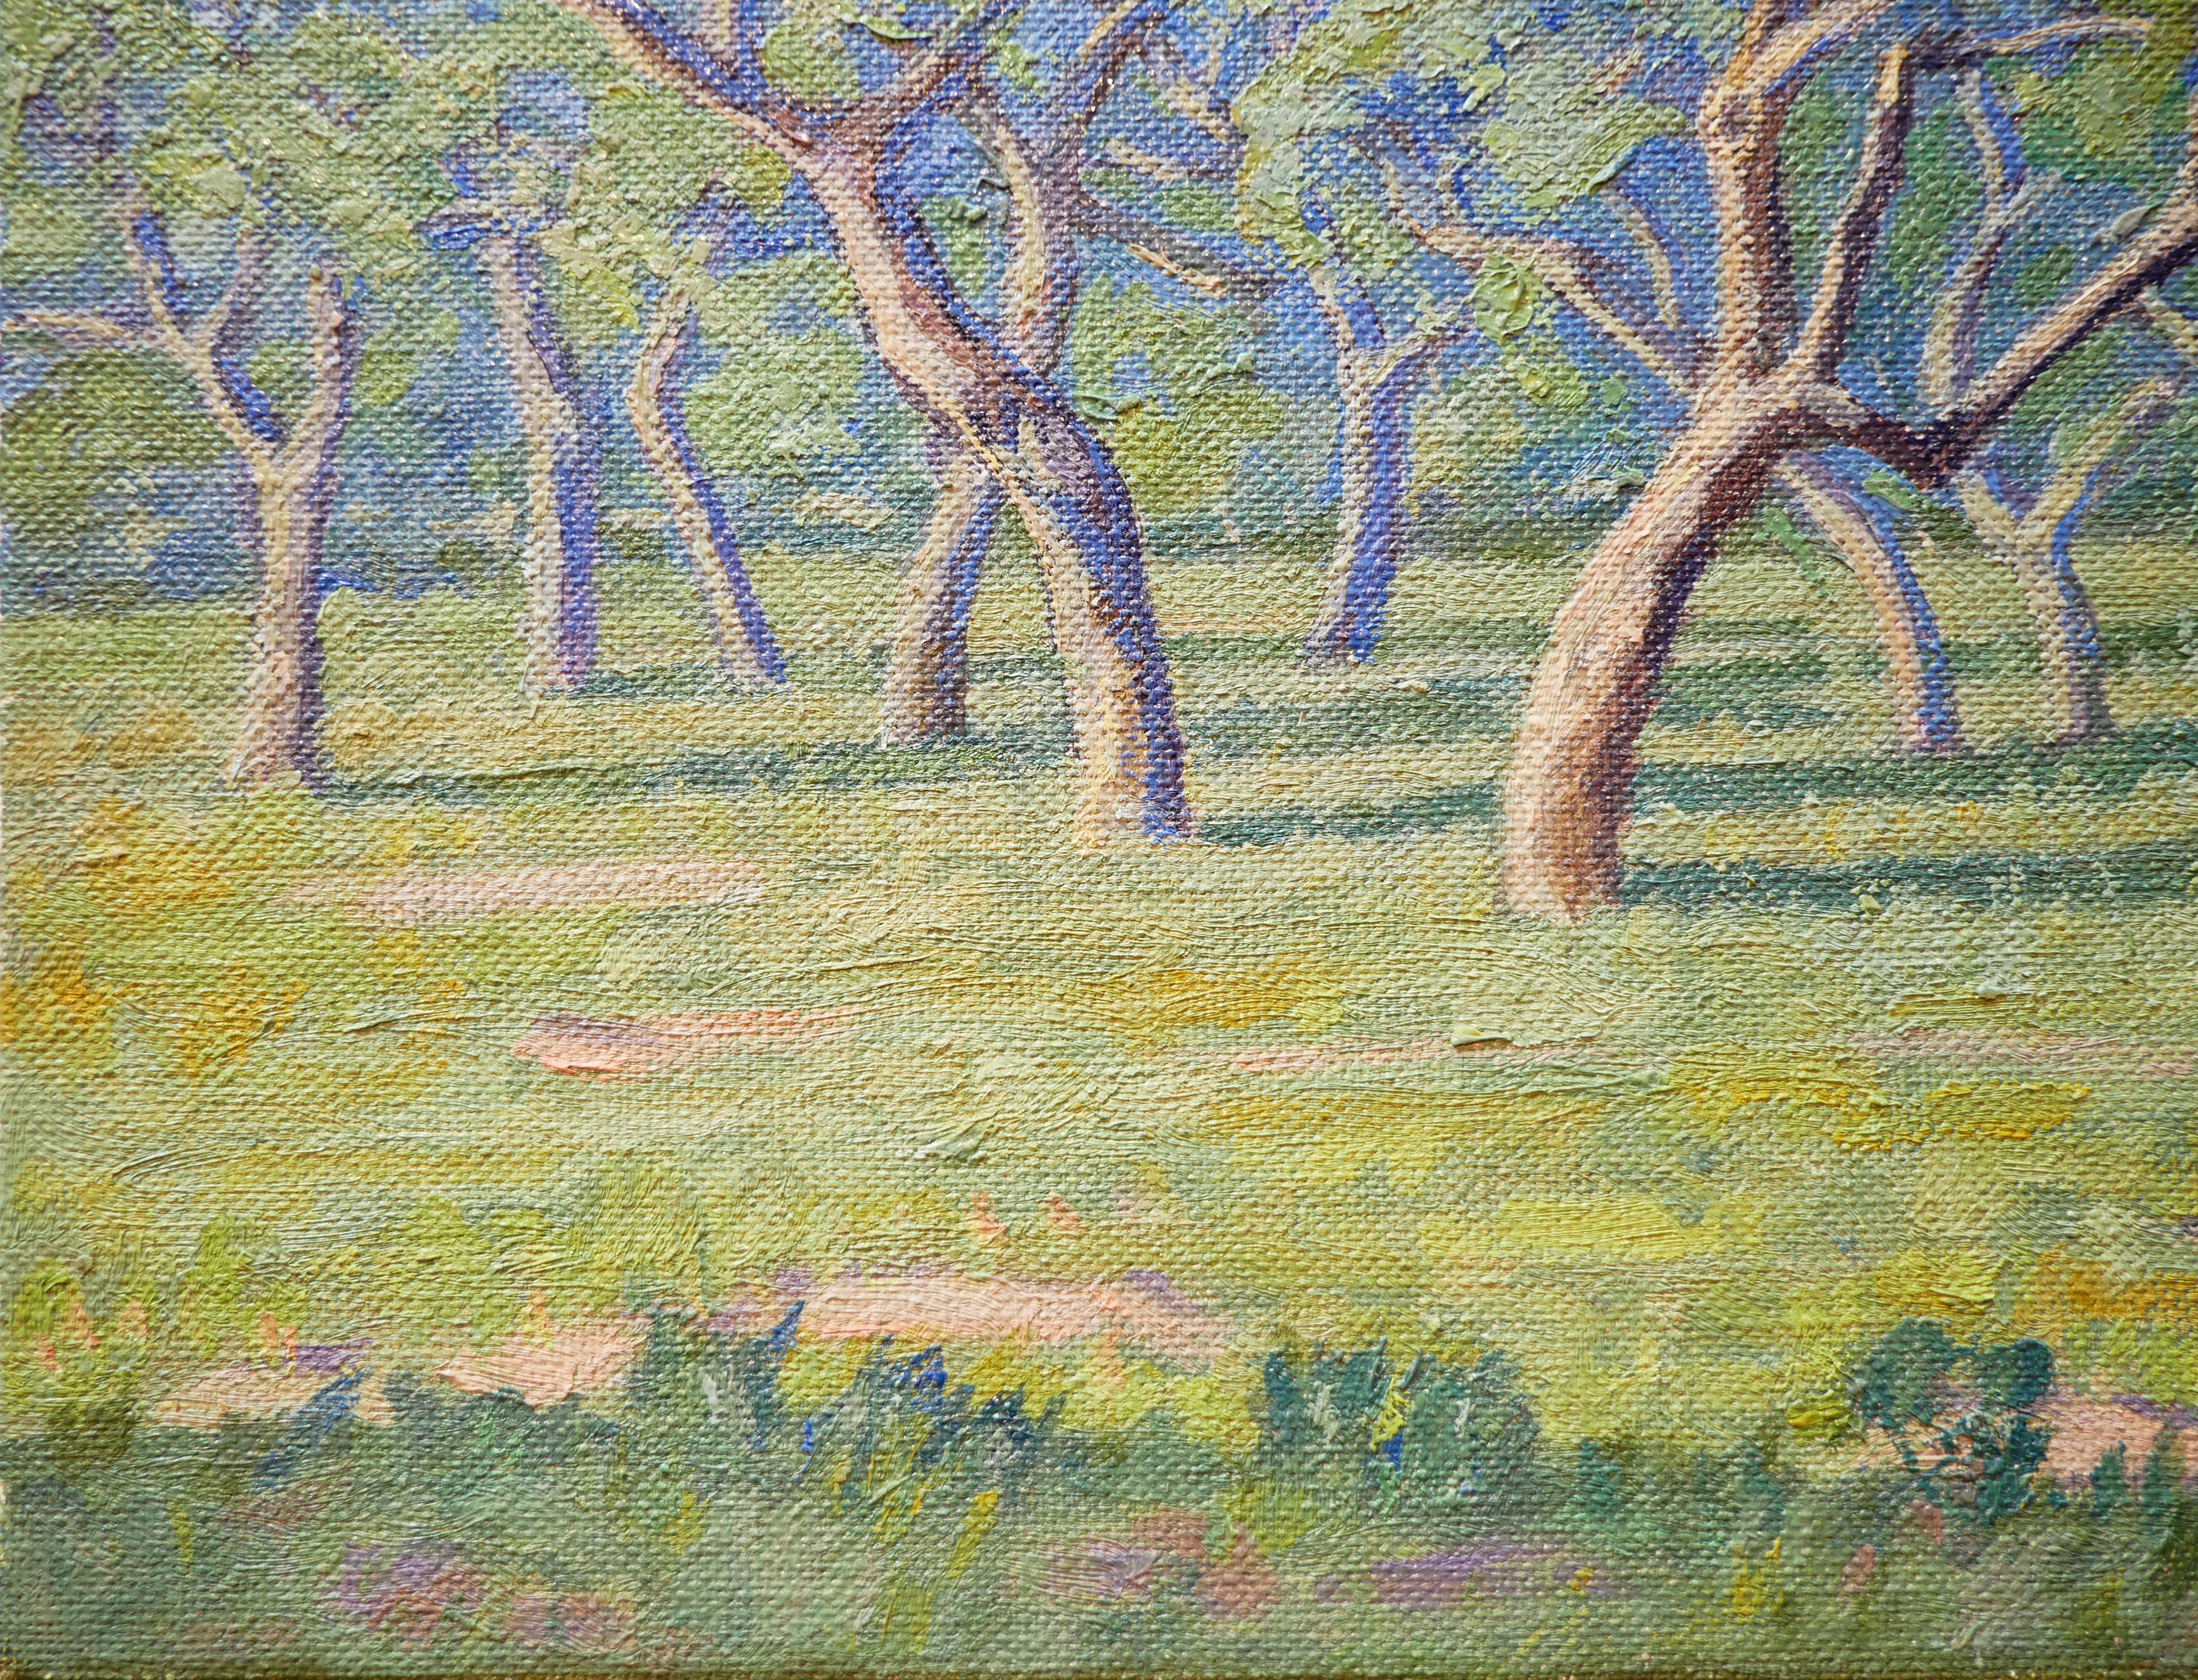 Kühle, pastellfarbene, abstrakte, impressionistische Wüstenlandschaft des deutschen Künstlers Fred Darge. Dieses Gemälde zeigt eine nachmittägliche Landschaftsszene mit Eichen im Goose Island State Park, TX. Signiert vom Künstler in der rechten